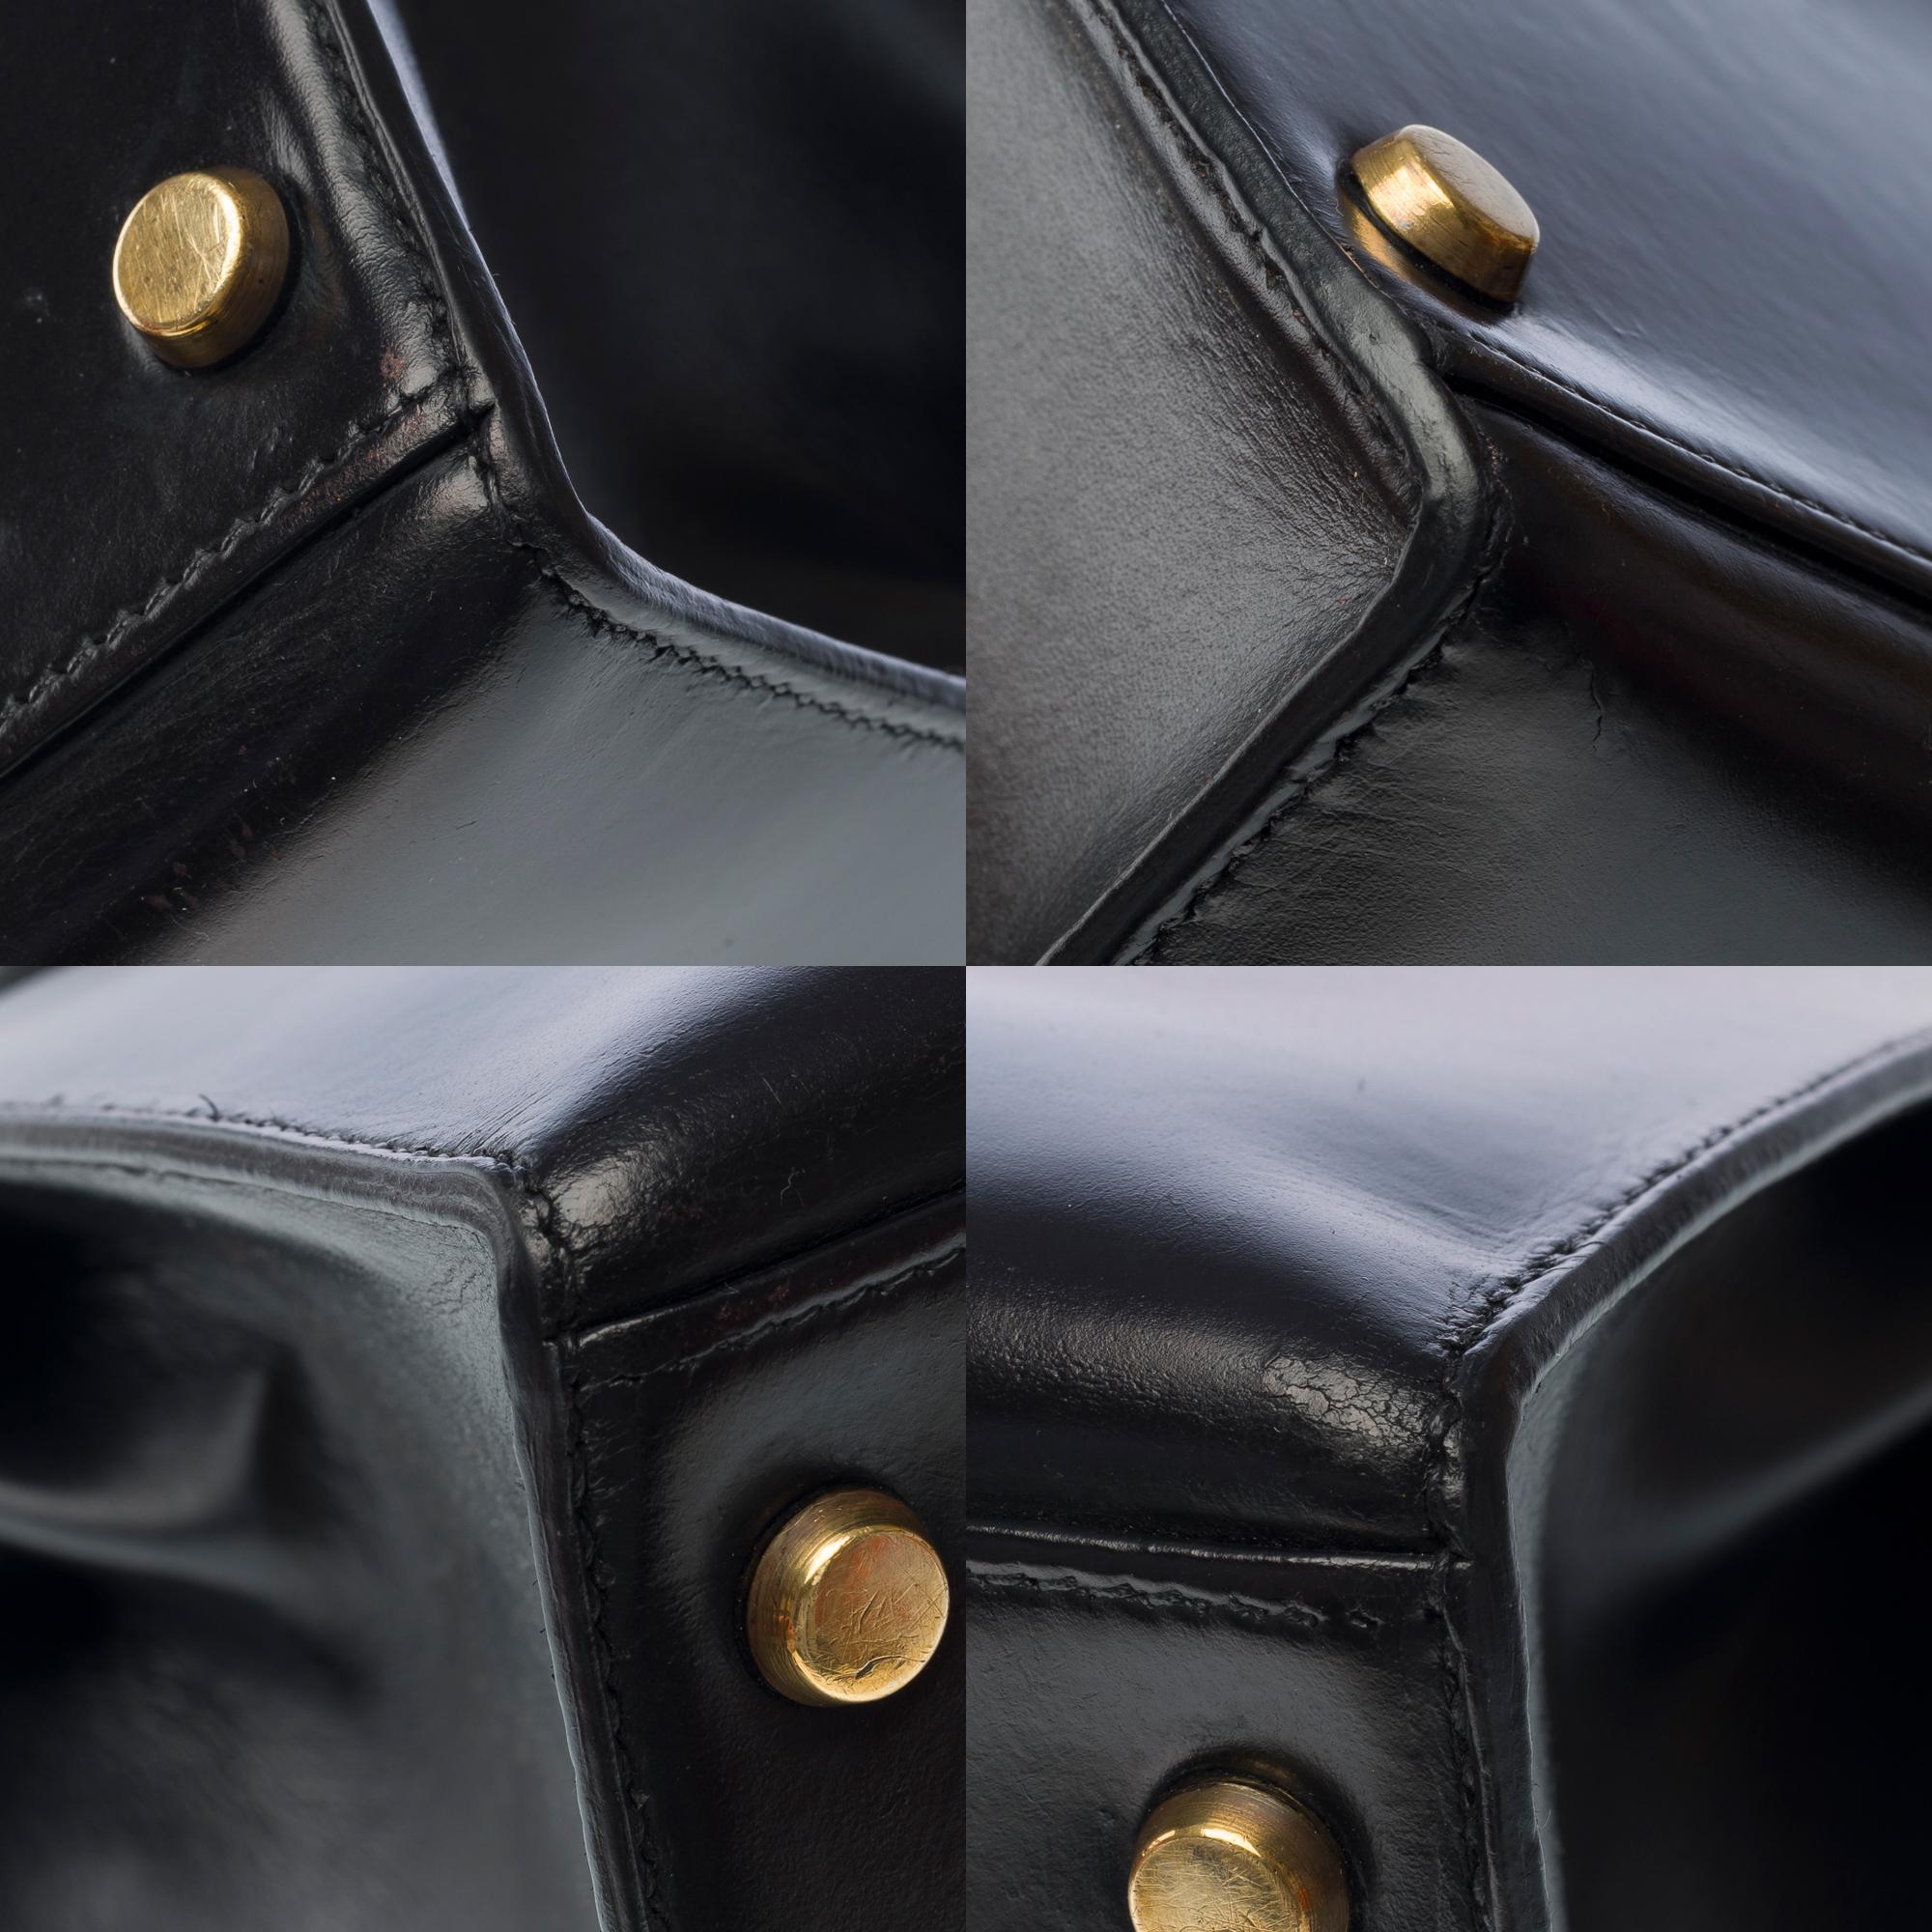 Hermes Kelly 28 sellier handbag in Black box calfskin leather, GHW For Sale 7